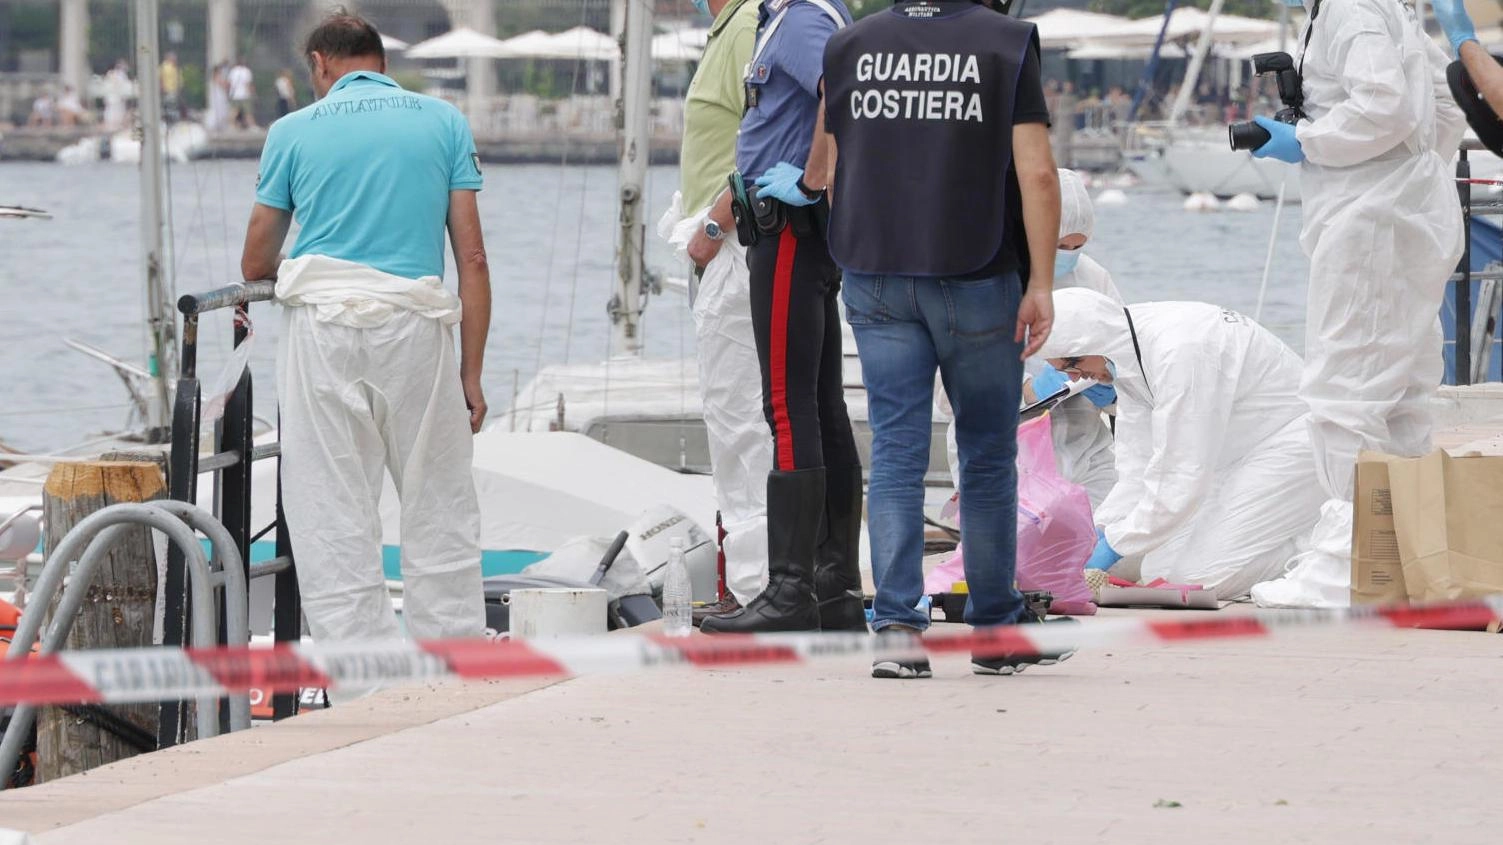 Il lago di Garda restituisce il corpo di una donna a Tremosine, senza segni di violenza. Identità sconosciuta, ipotesi di annegamento. Autorità indagano.